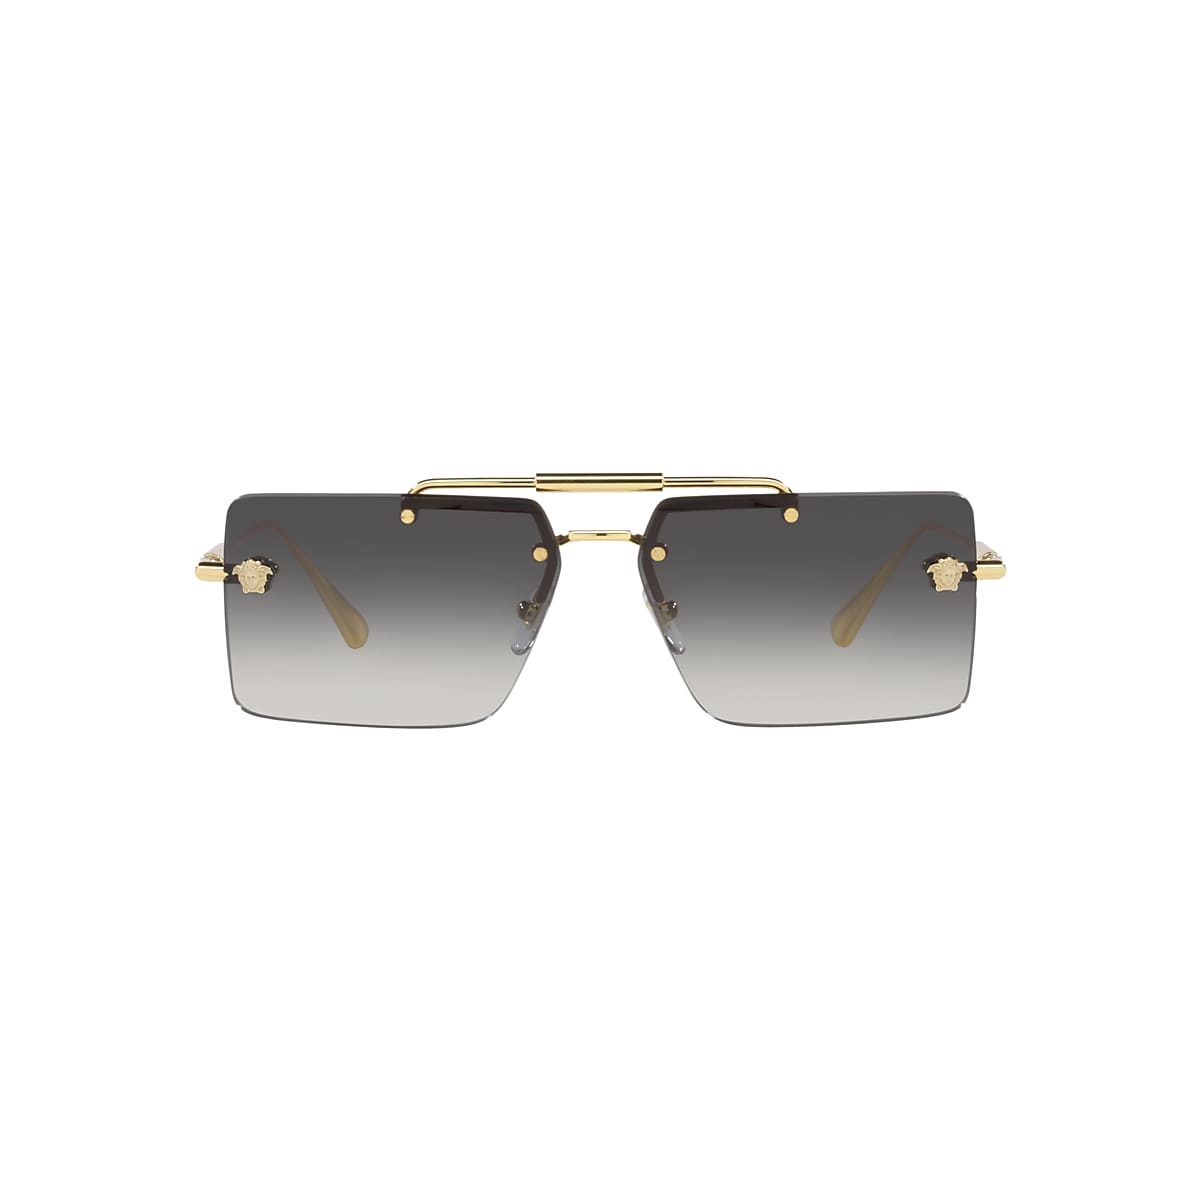 VERSACE VE2245 Gold - Women Luxury Sunglasses, Grey Gradient Lens